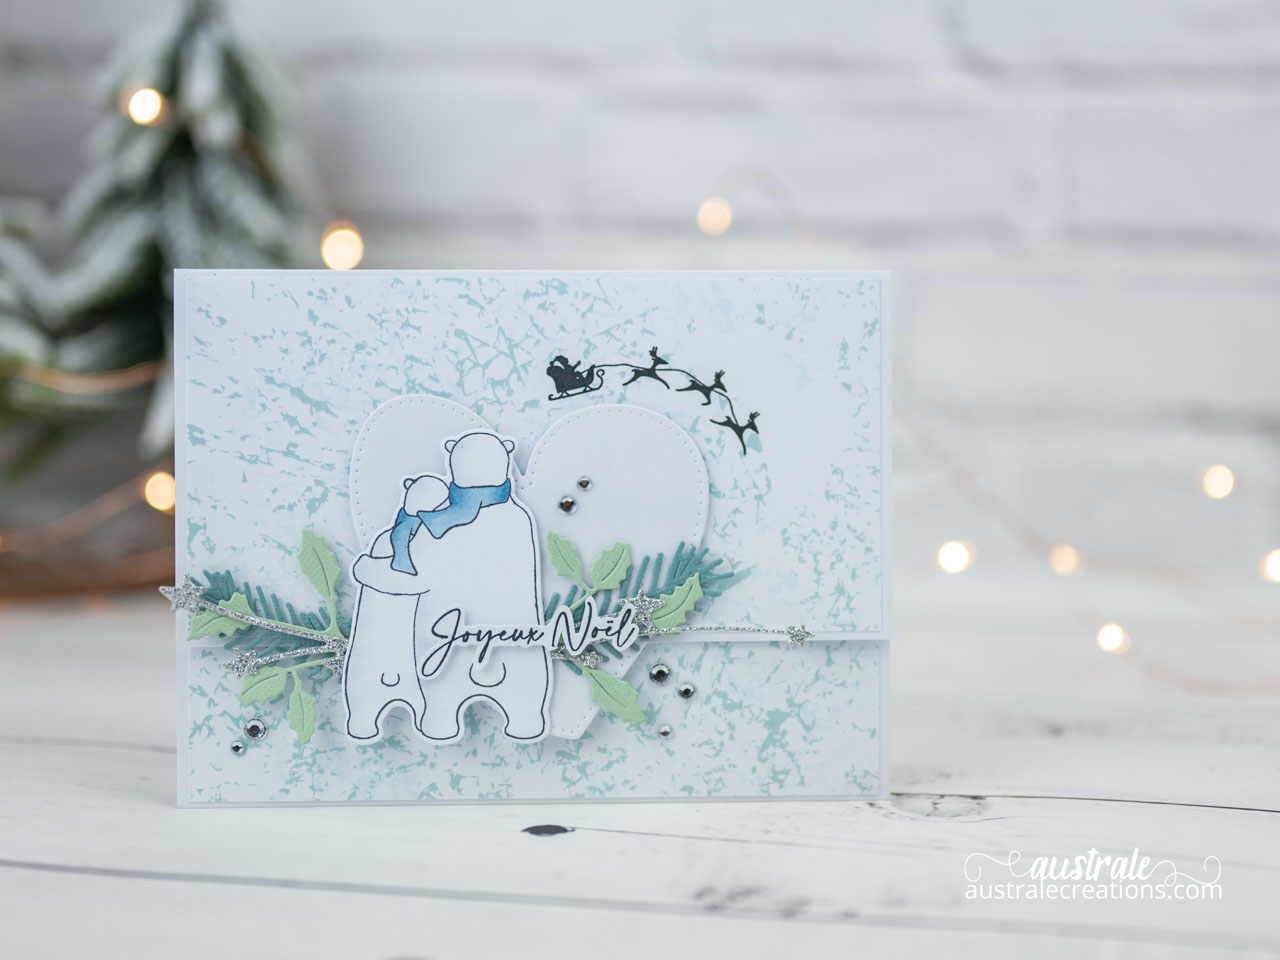 Création d'une pochette cadeau avec rabat aimanté, ours polaire, coeur, traineau volant et feuillages.